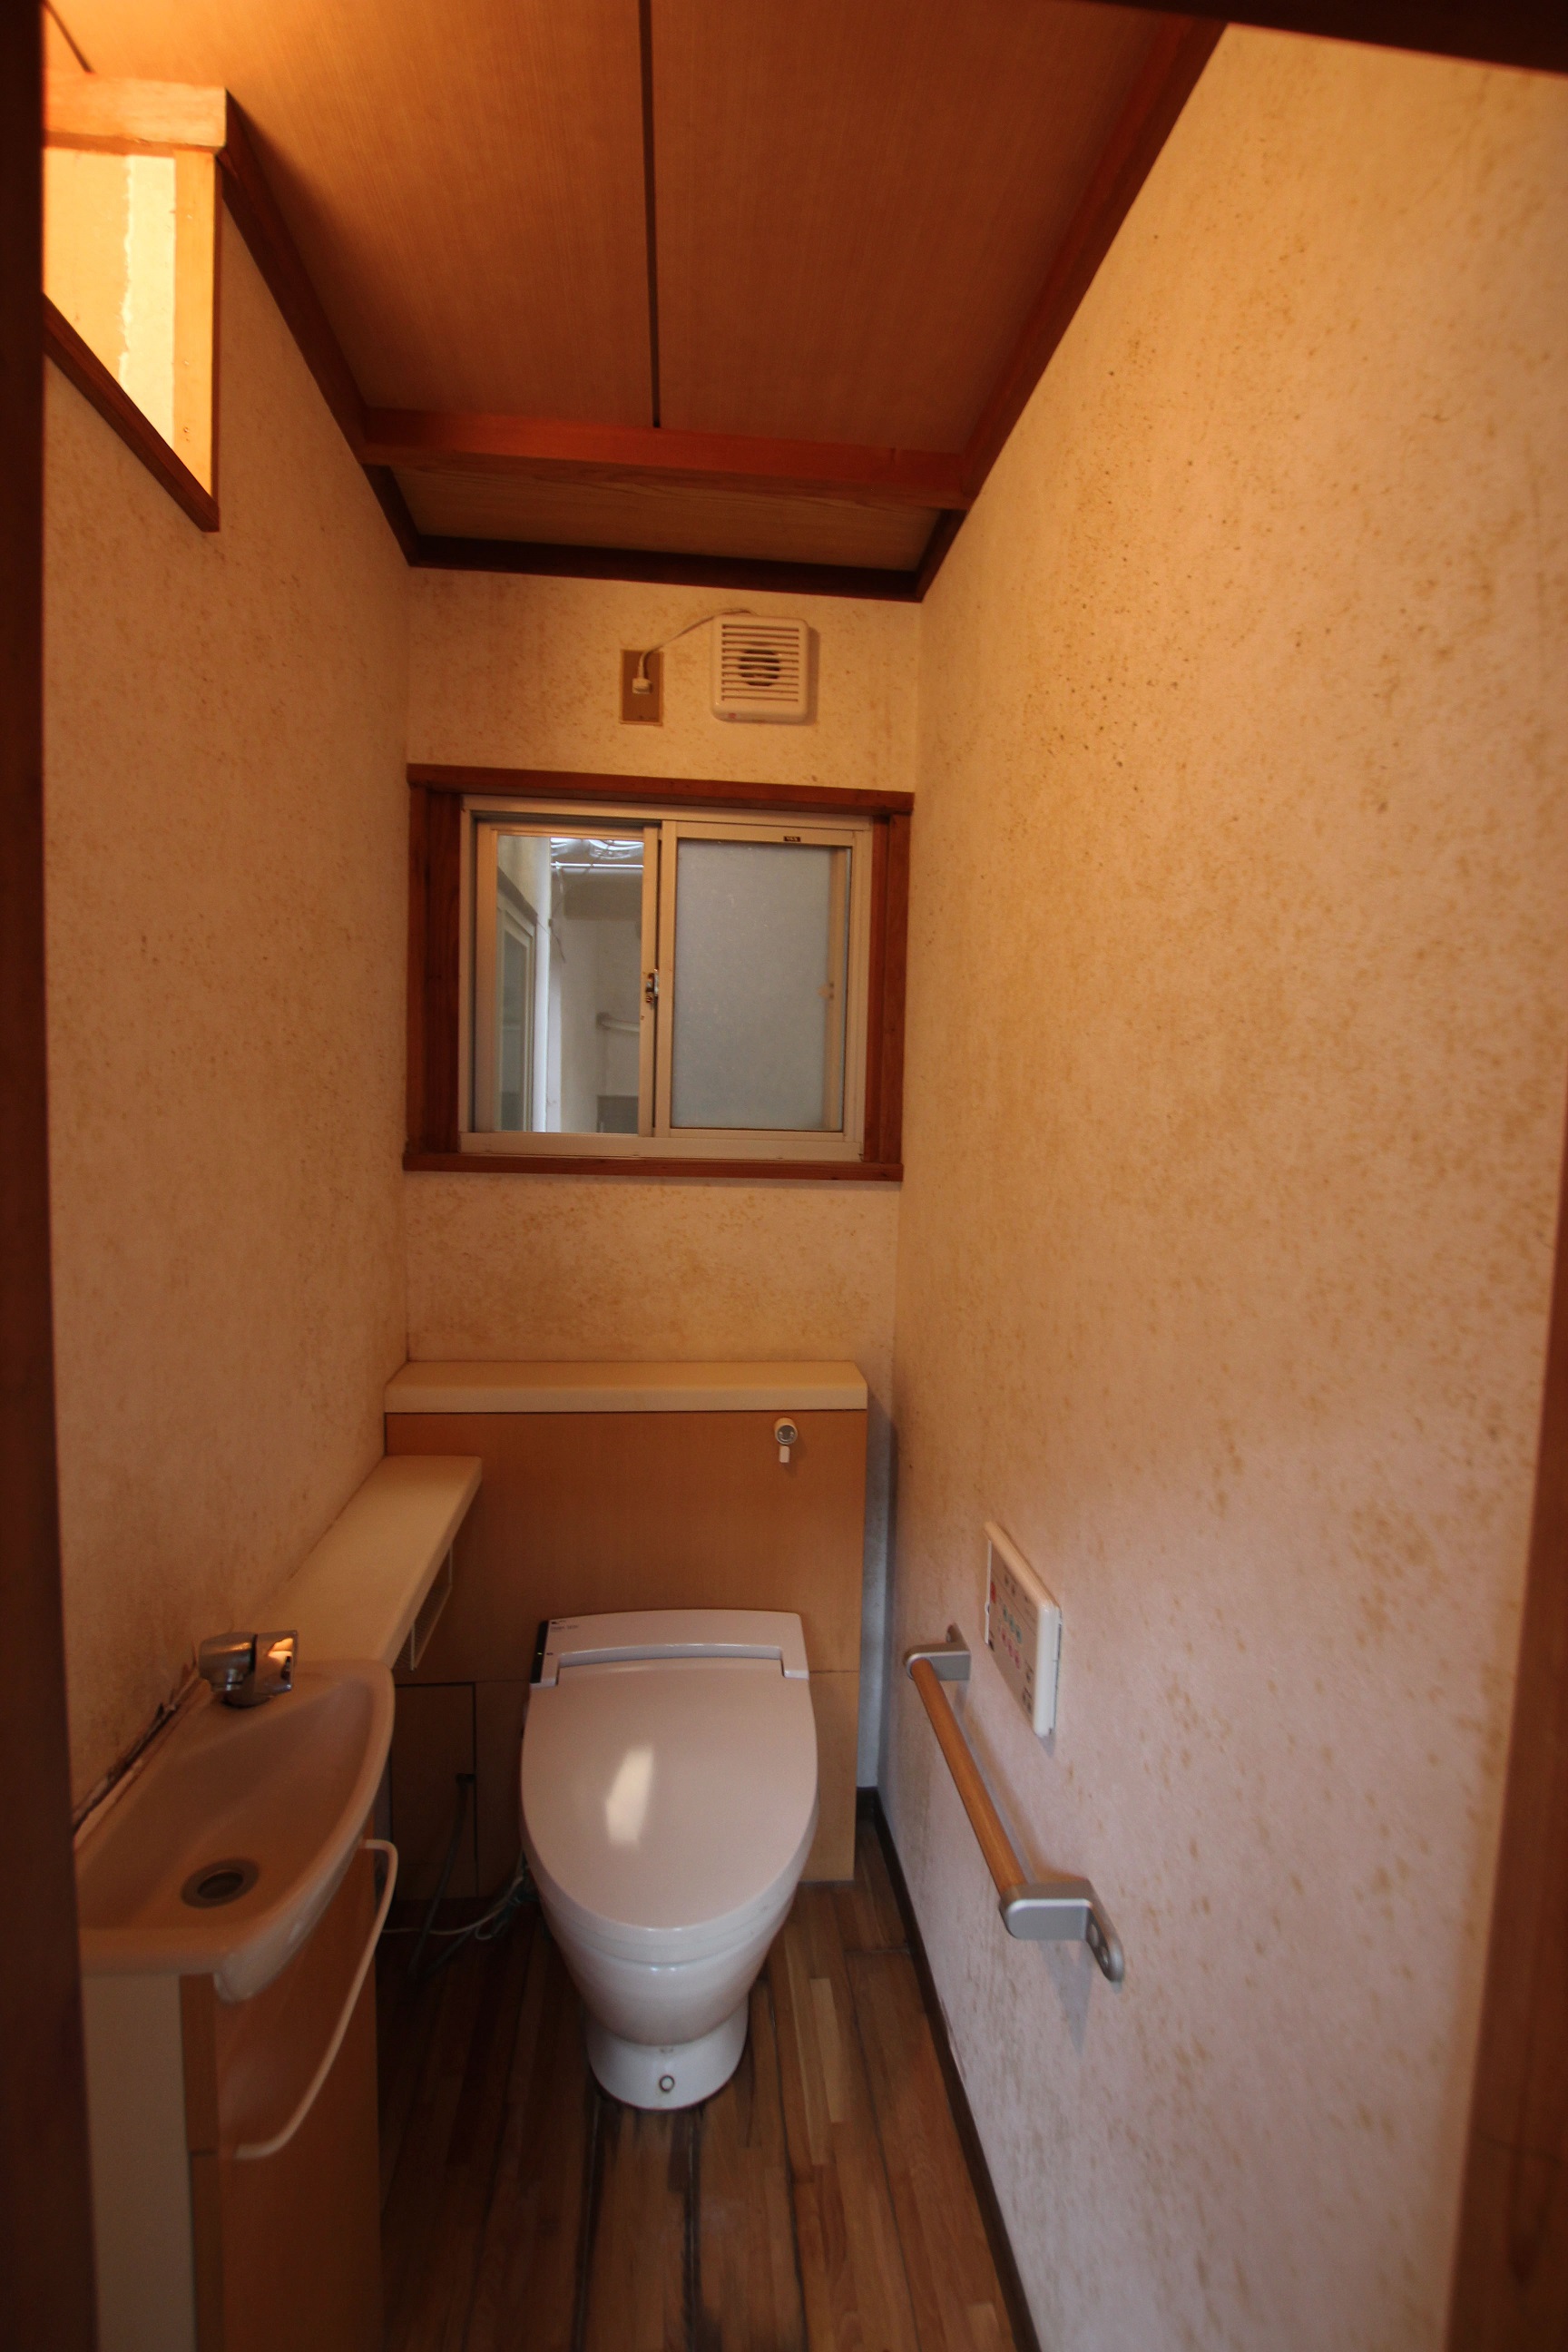 クロス張替 内装ﾘﾌｫｰﾑ トイレ 青木水道 住まいるアオキ 水廻りの工事に携わり40年